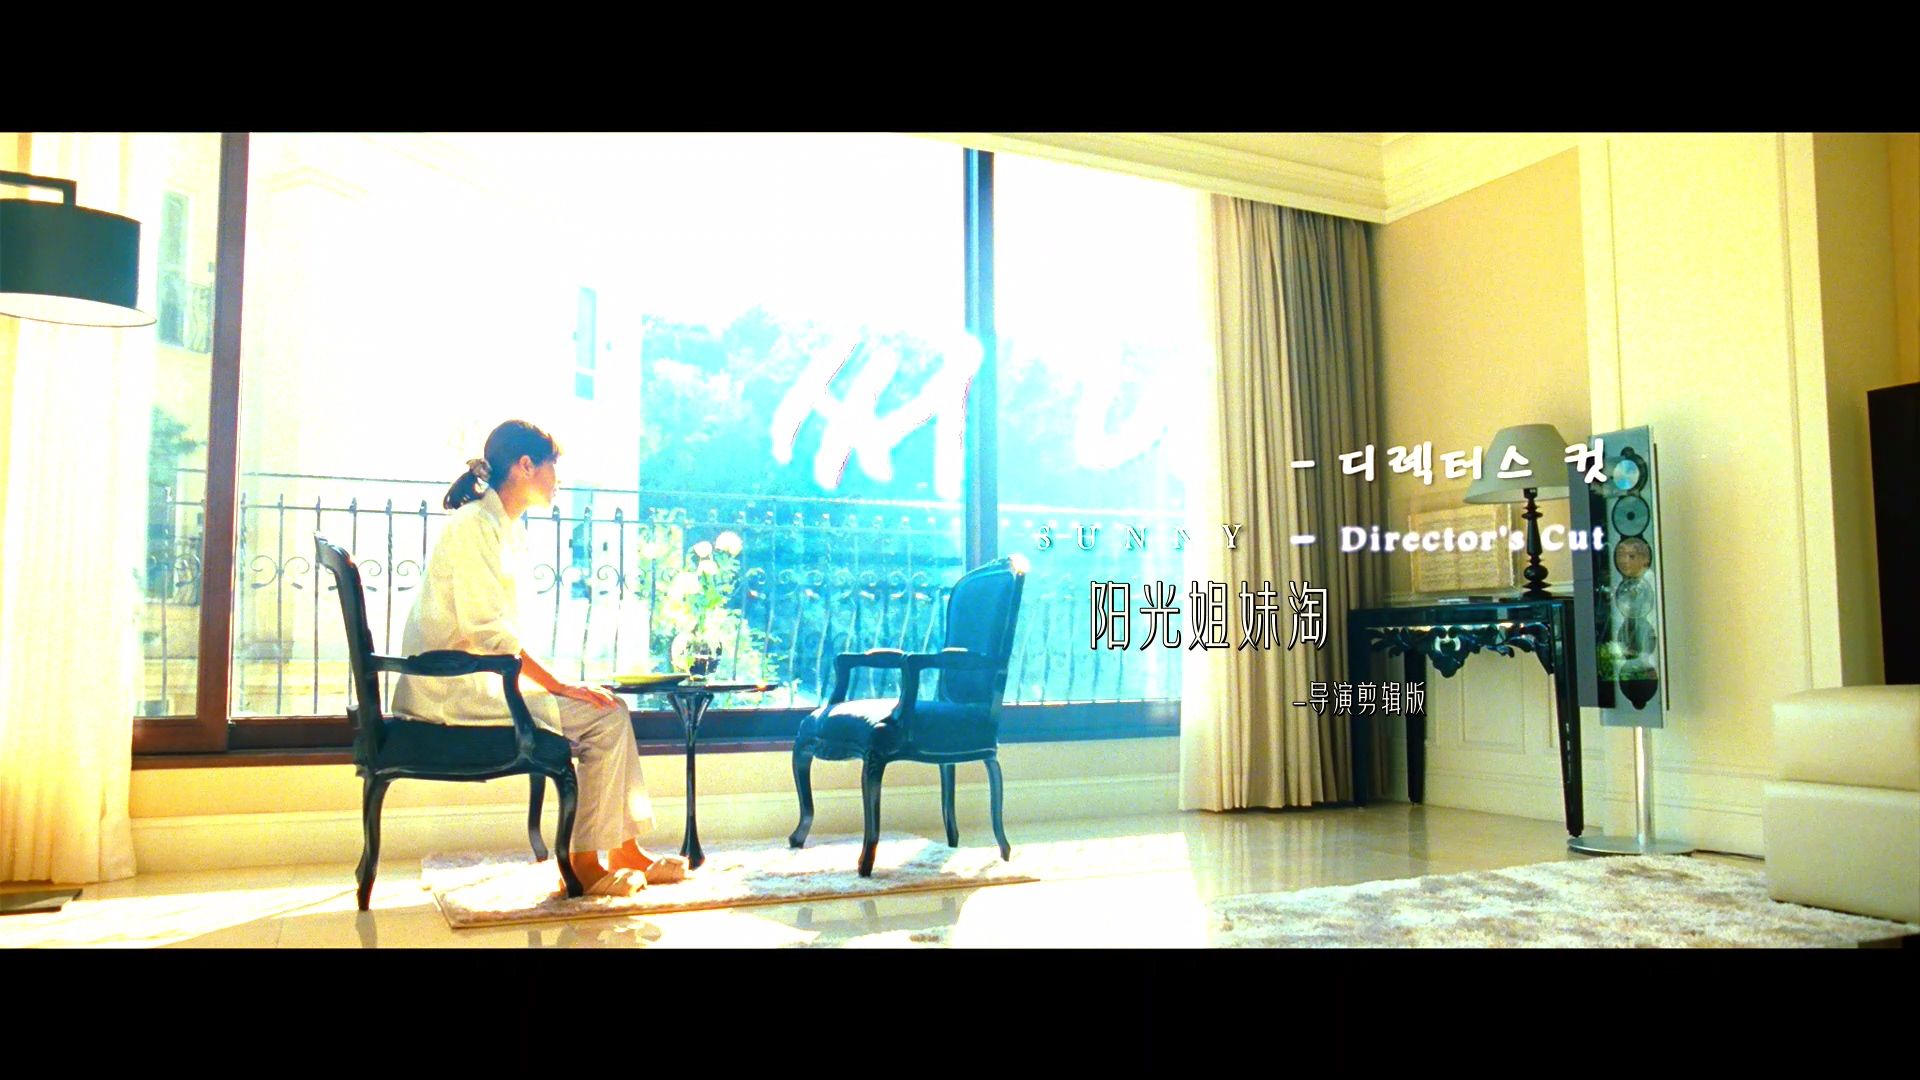 阳光姐妹淘 [导演剪辑版 DIY简繁中字+半汉化菜单] Sunny Directors Cut 2011 Blu-ray 1080p AVC DTS-HD MA 5.1 DIY-Chinagear@HDSky[36.15GB]-9.jpg